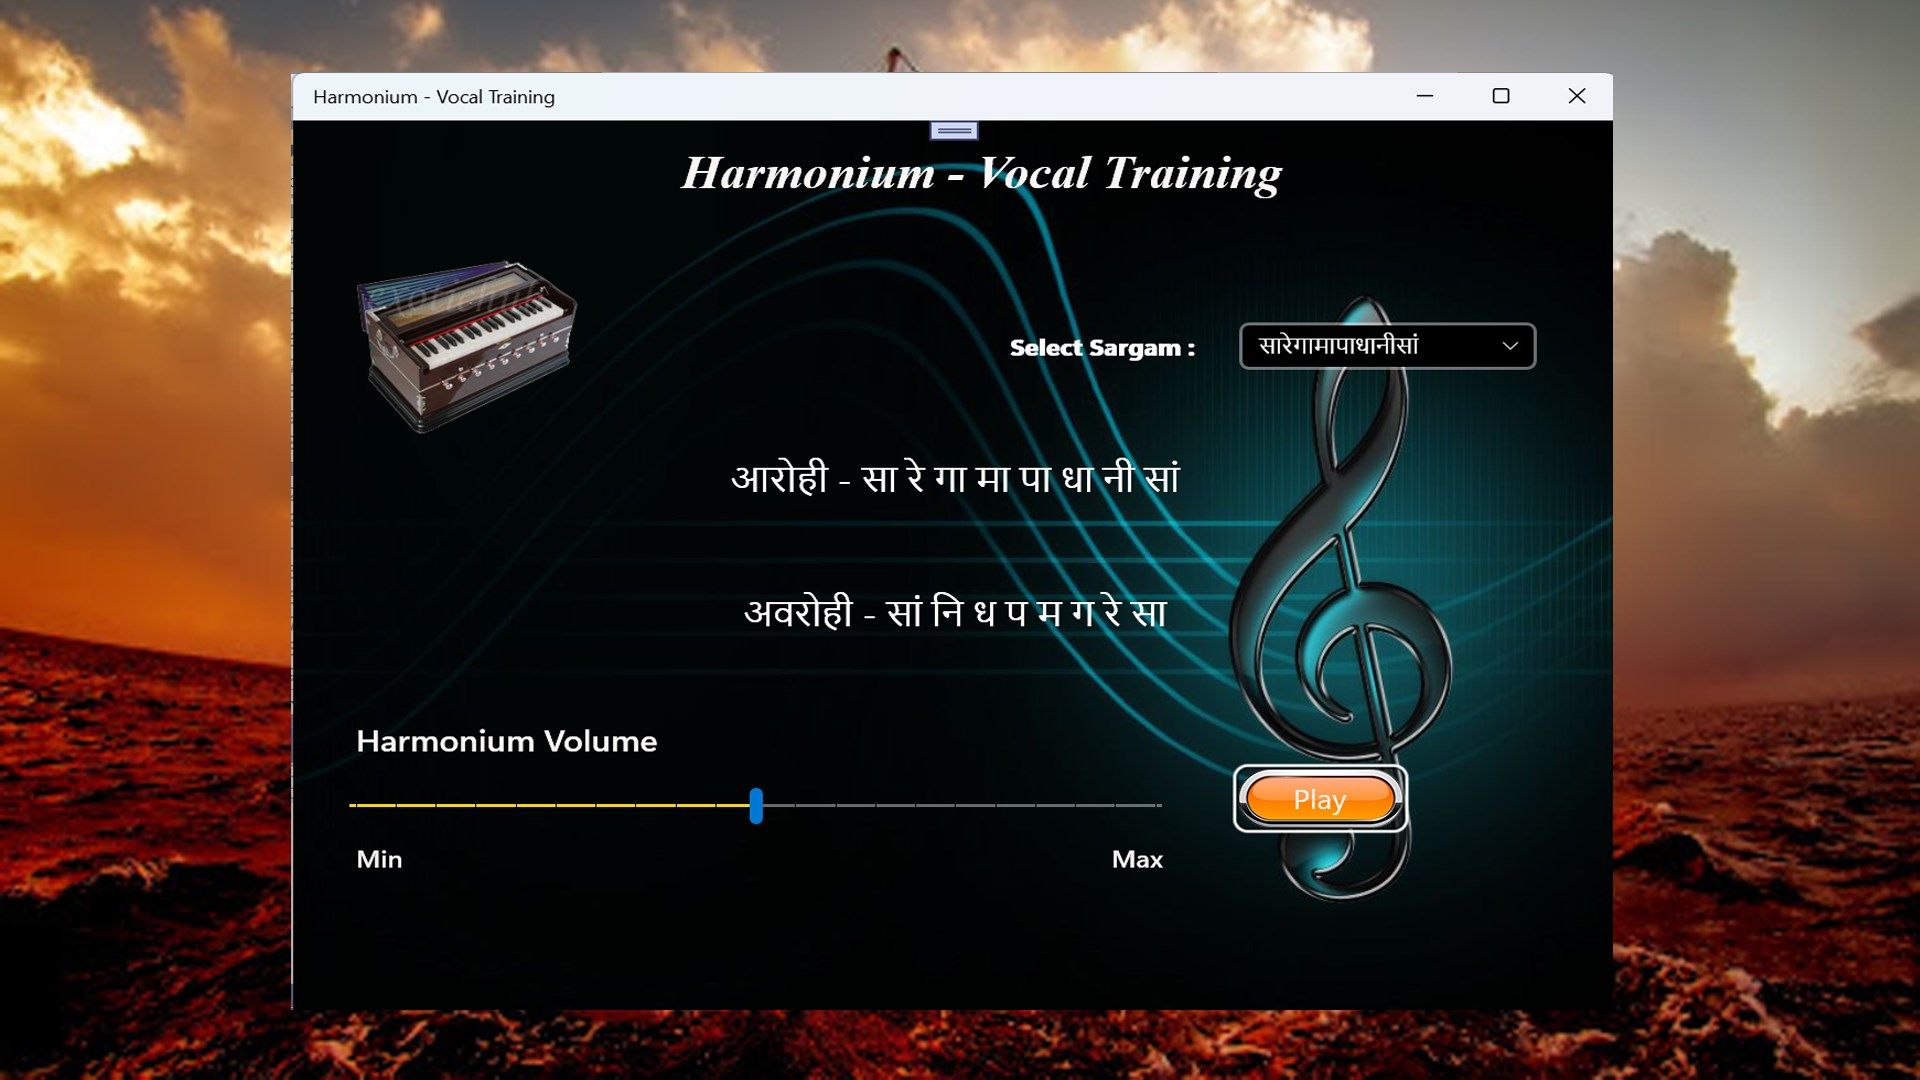 Harmonium - Vocal Training